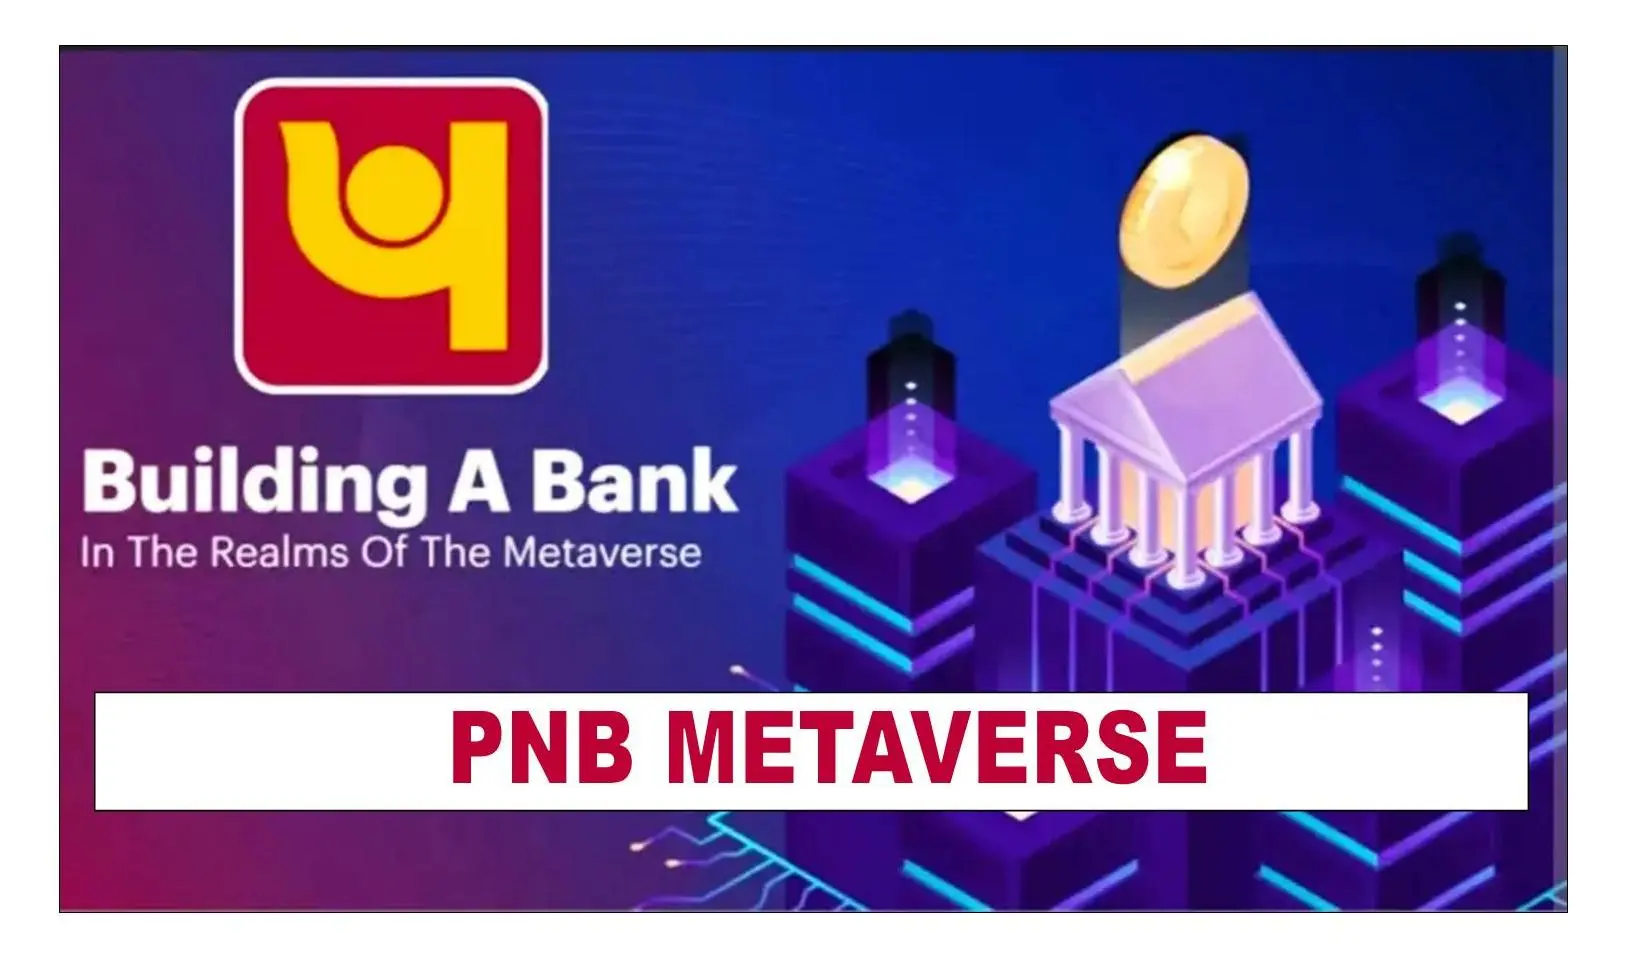 Virtually Banking Punjab National Bank virtual branch in Metaverse: PNB Metaverse